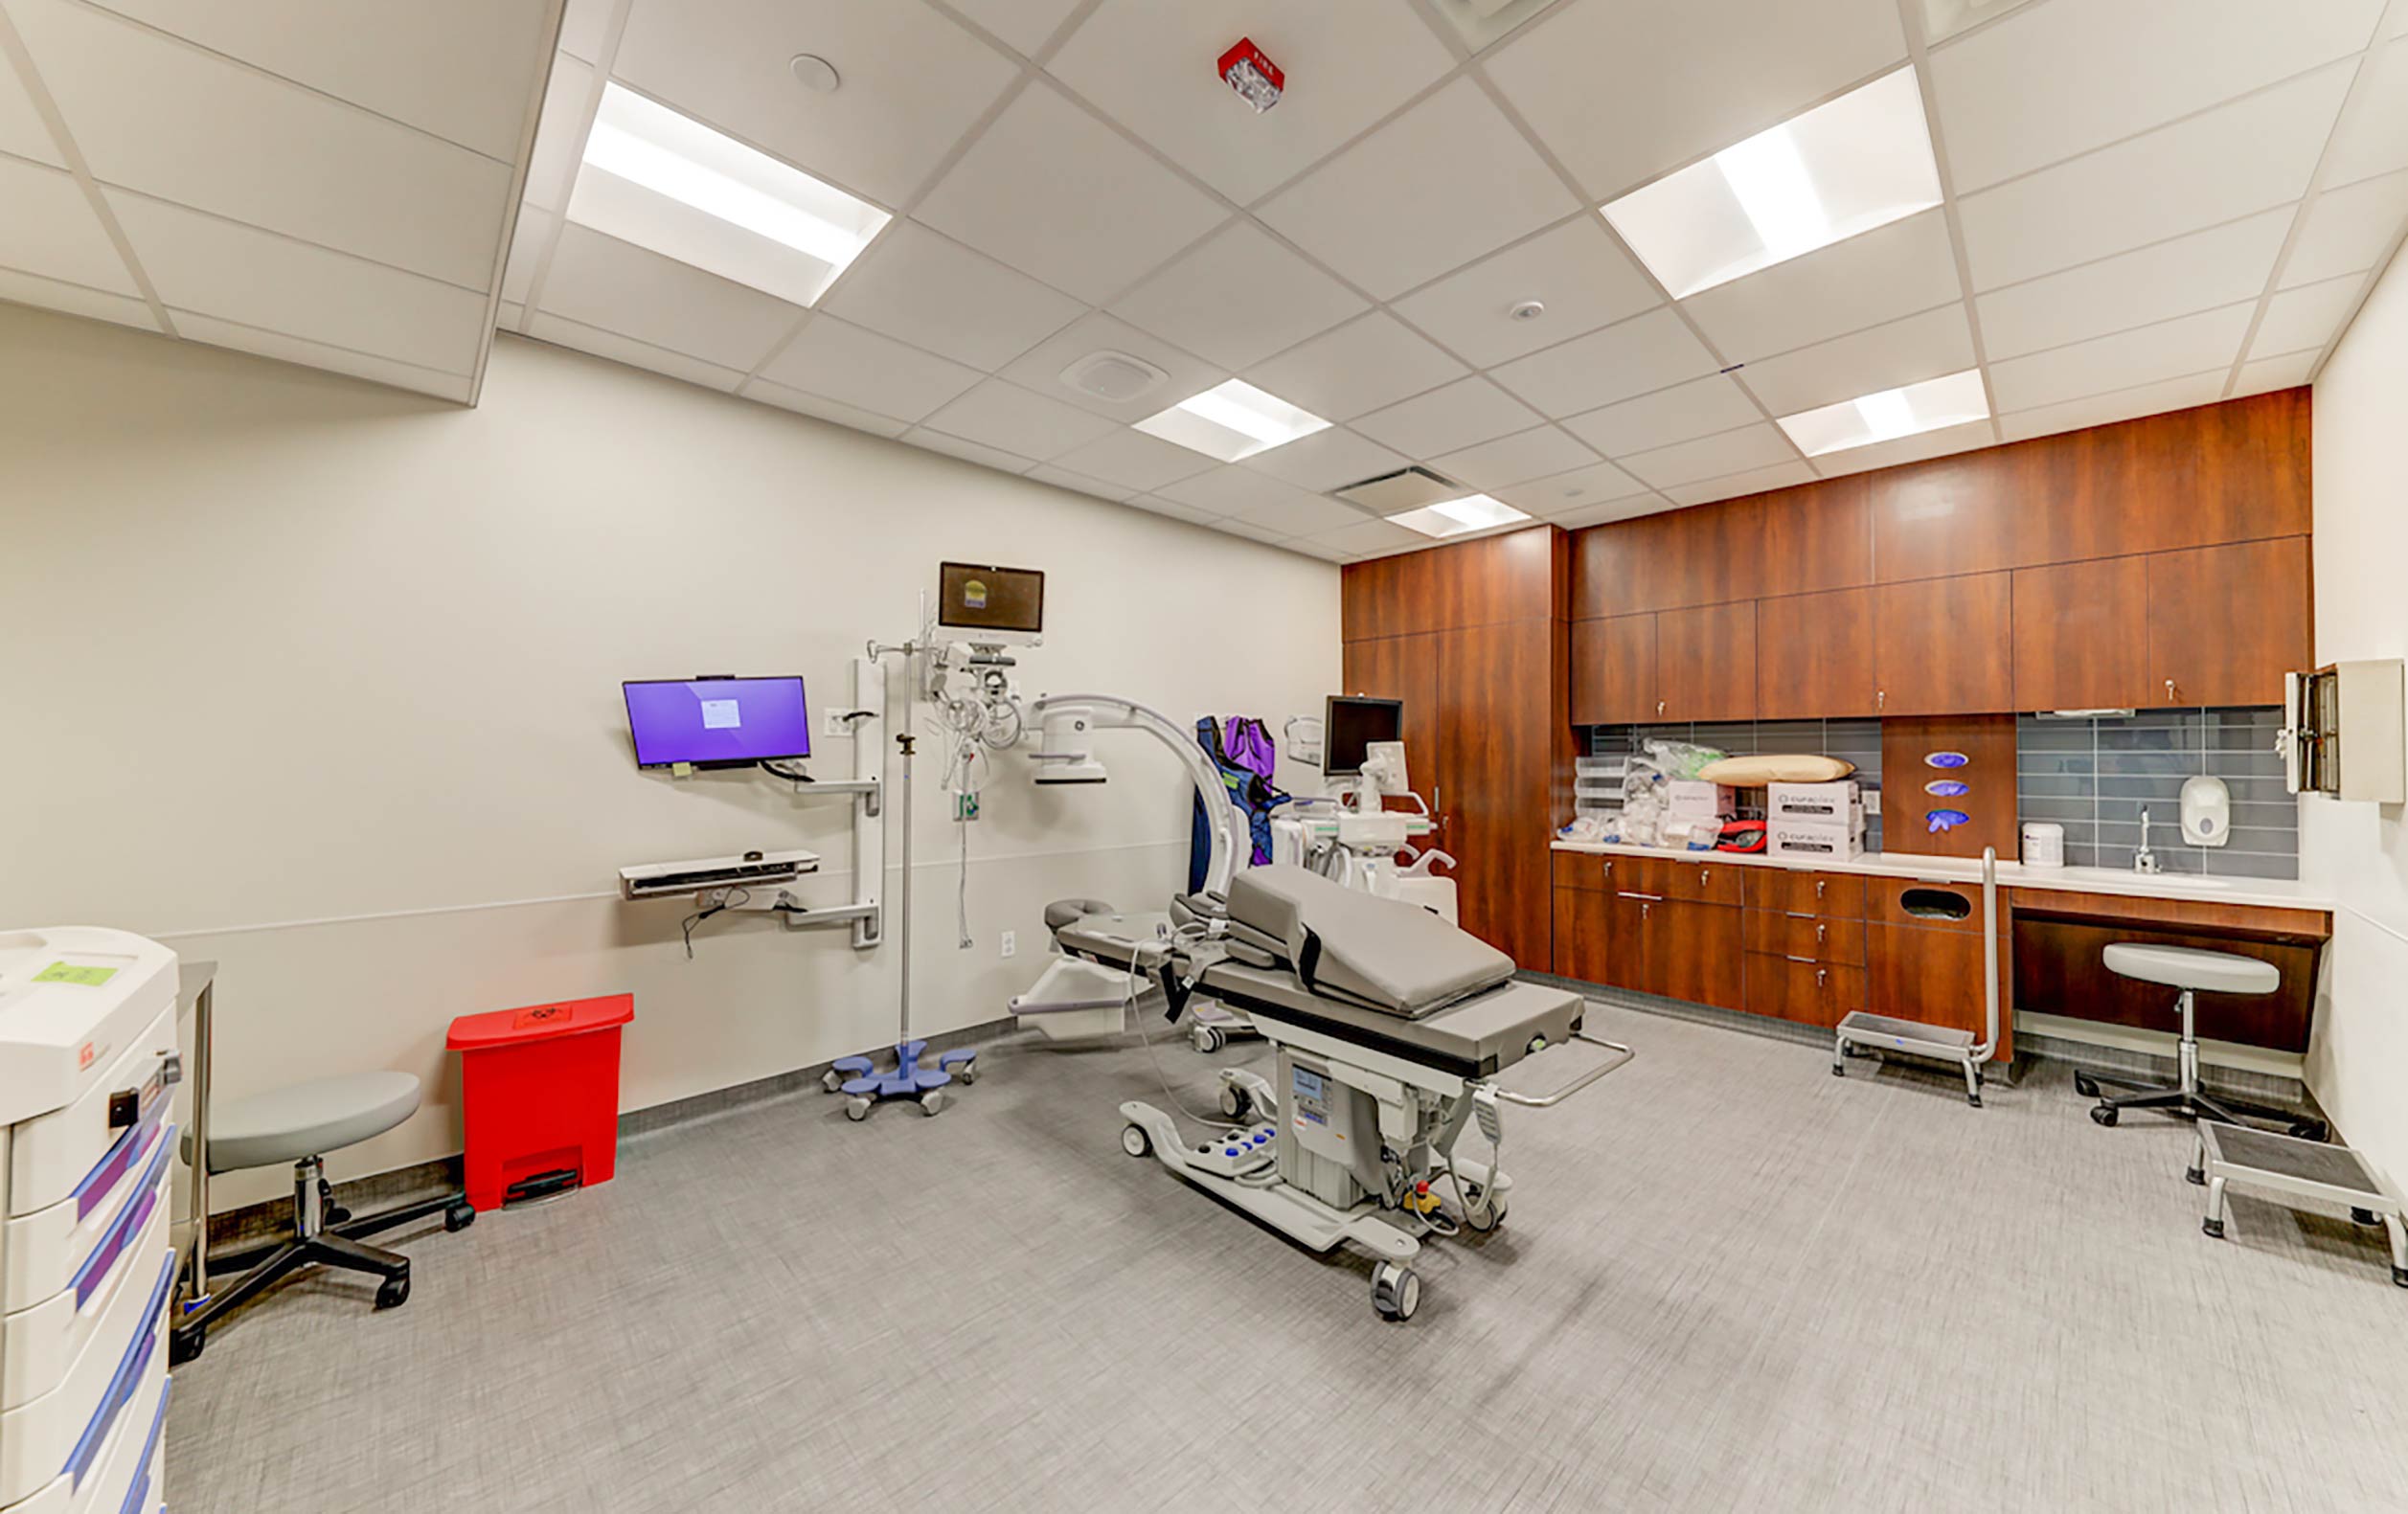 C-arm machine in medical suite